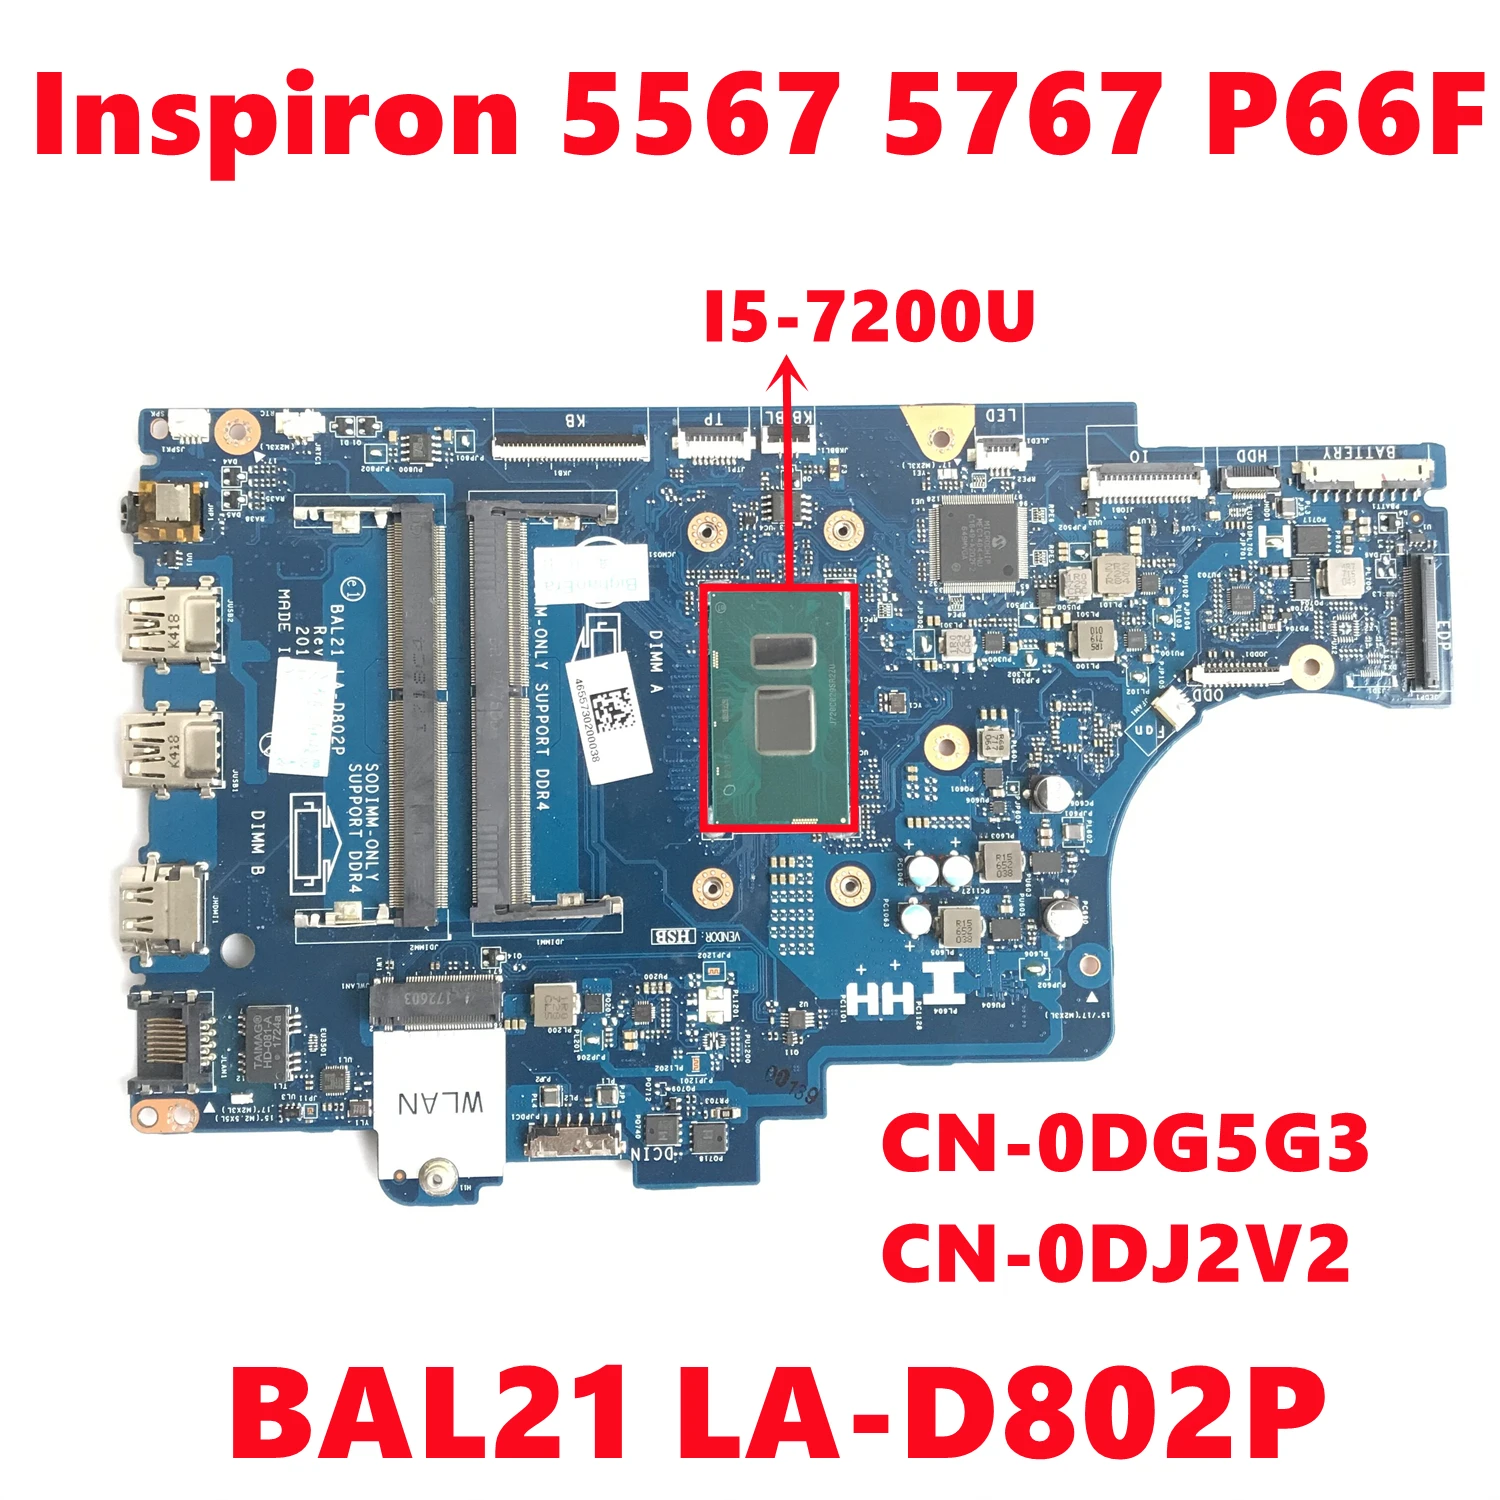 

CN-0DG5G3 DG5G3 CN-0DJ2V2 DJ2V2 For dell Inspiron 5567 5767 P66F Laptop Motherboard BAL21 LA-D802P With SR2ZU I5-7200U 100% Test